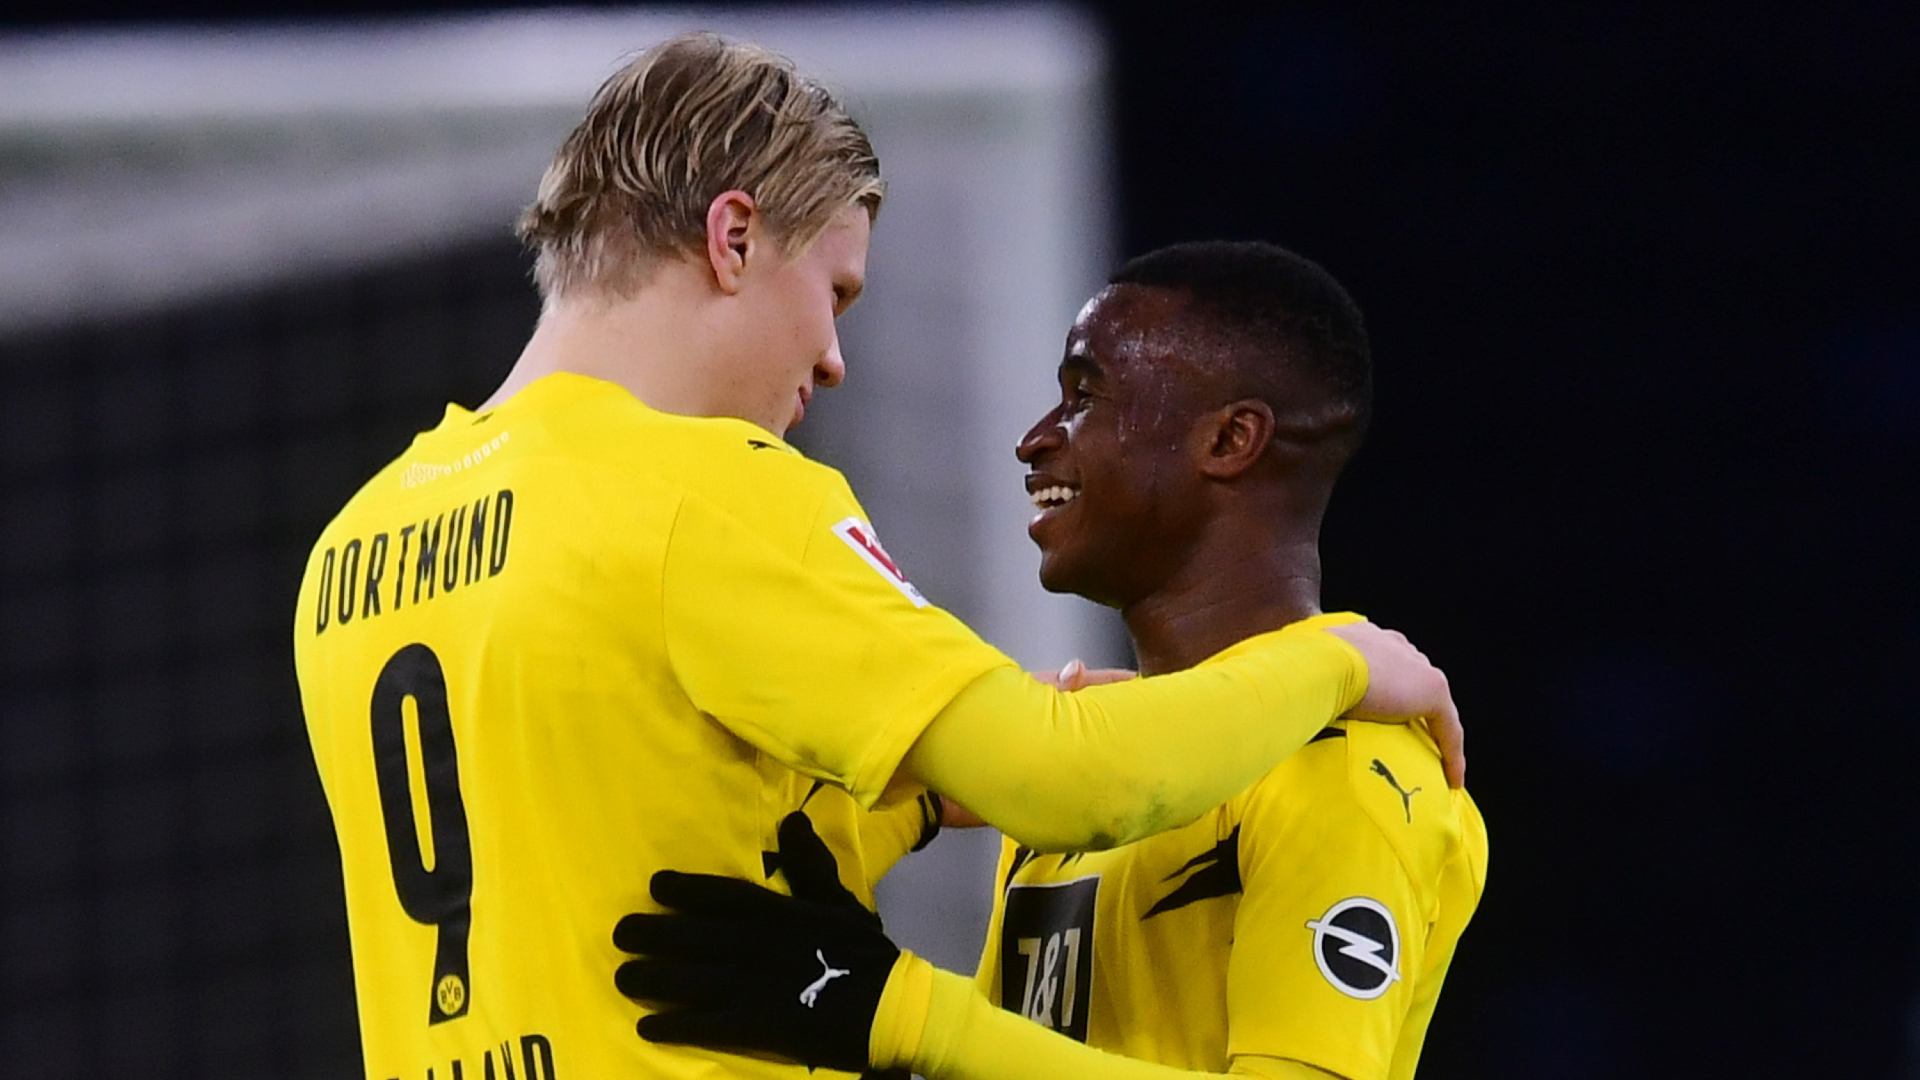 ‘The striker's striker’ – Dortmund’s Moukoko hails Haaland